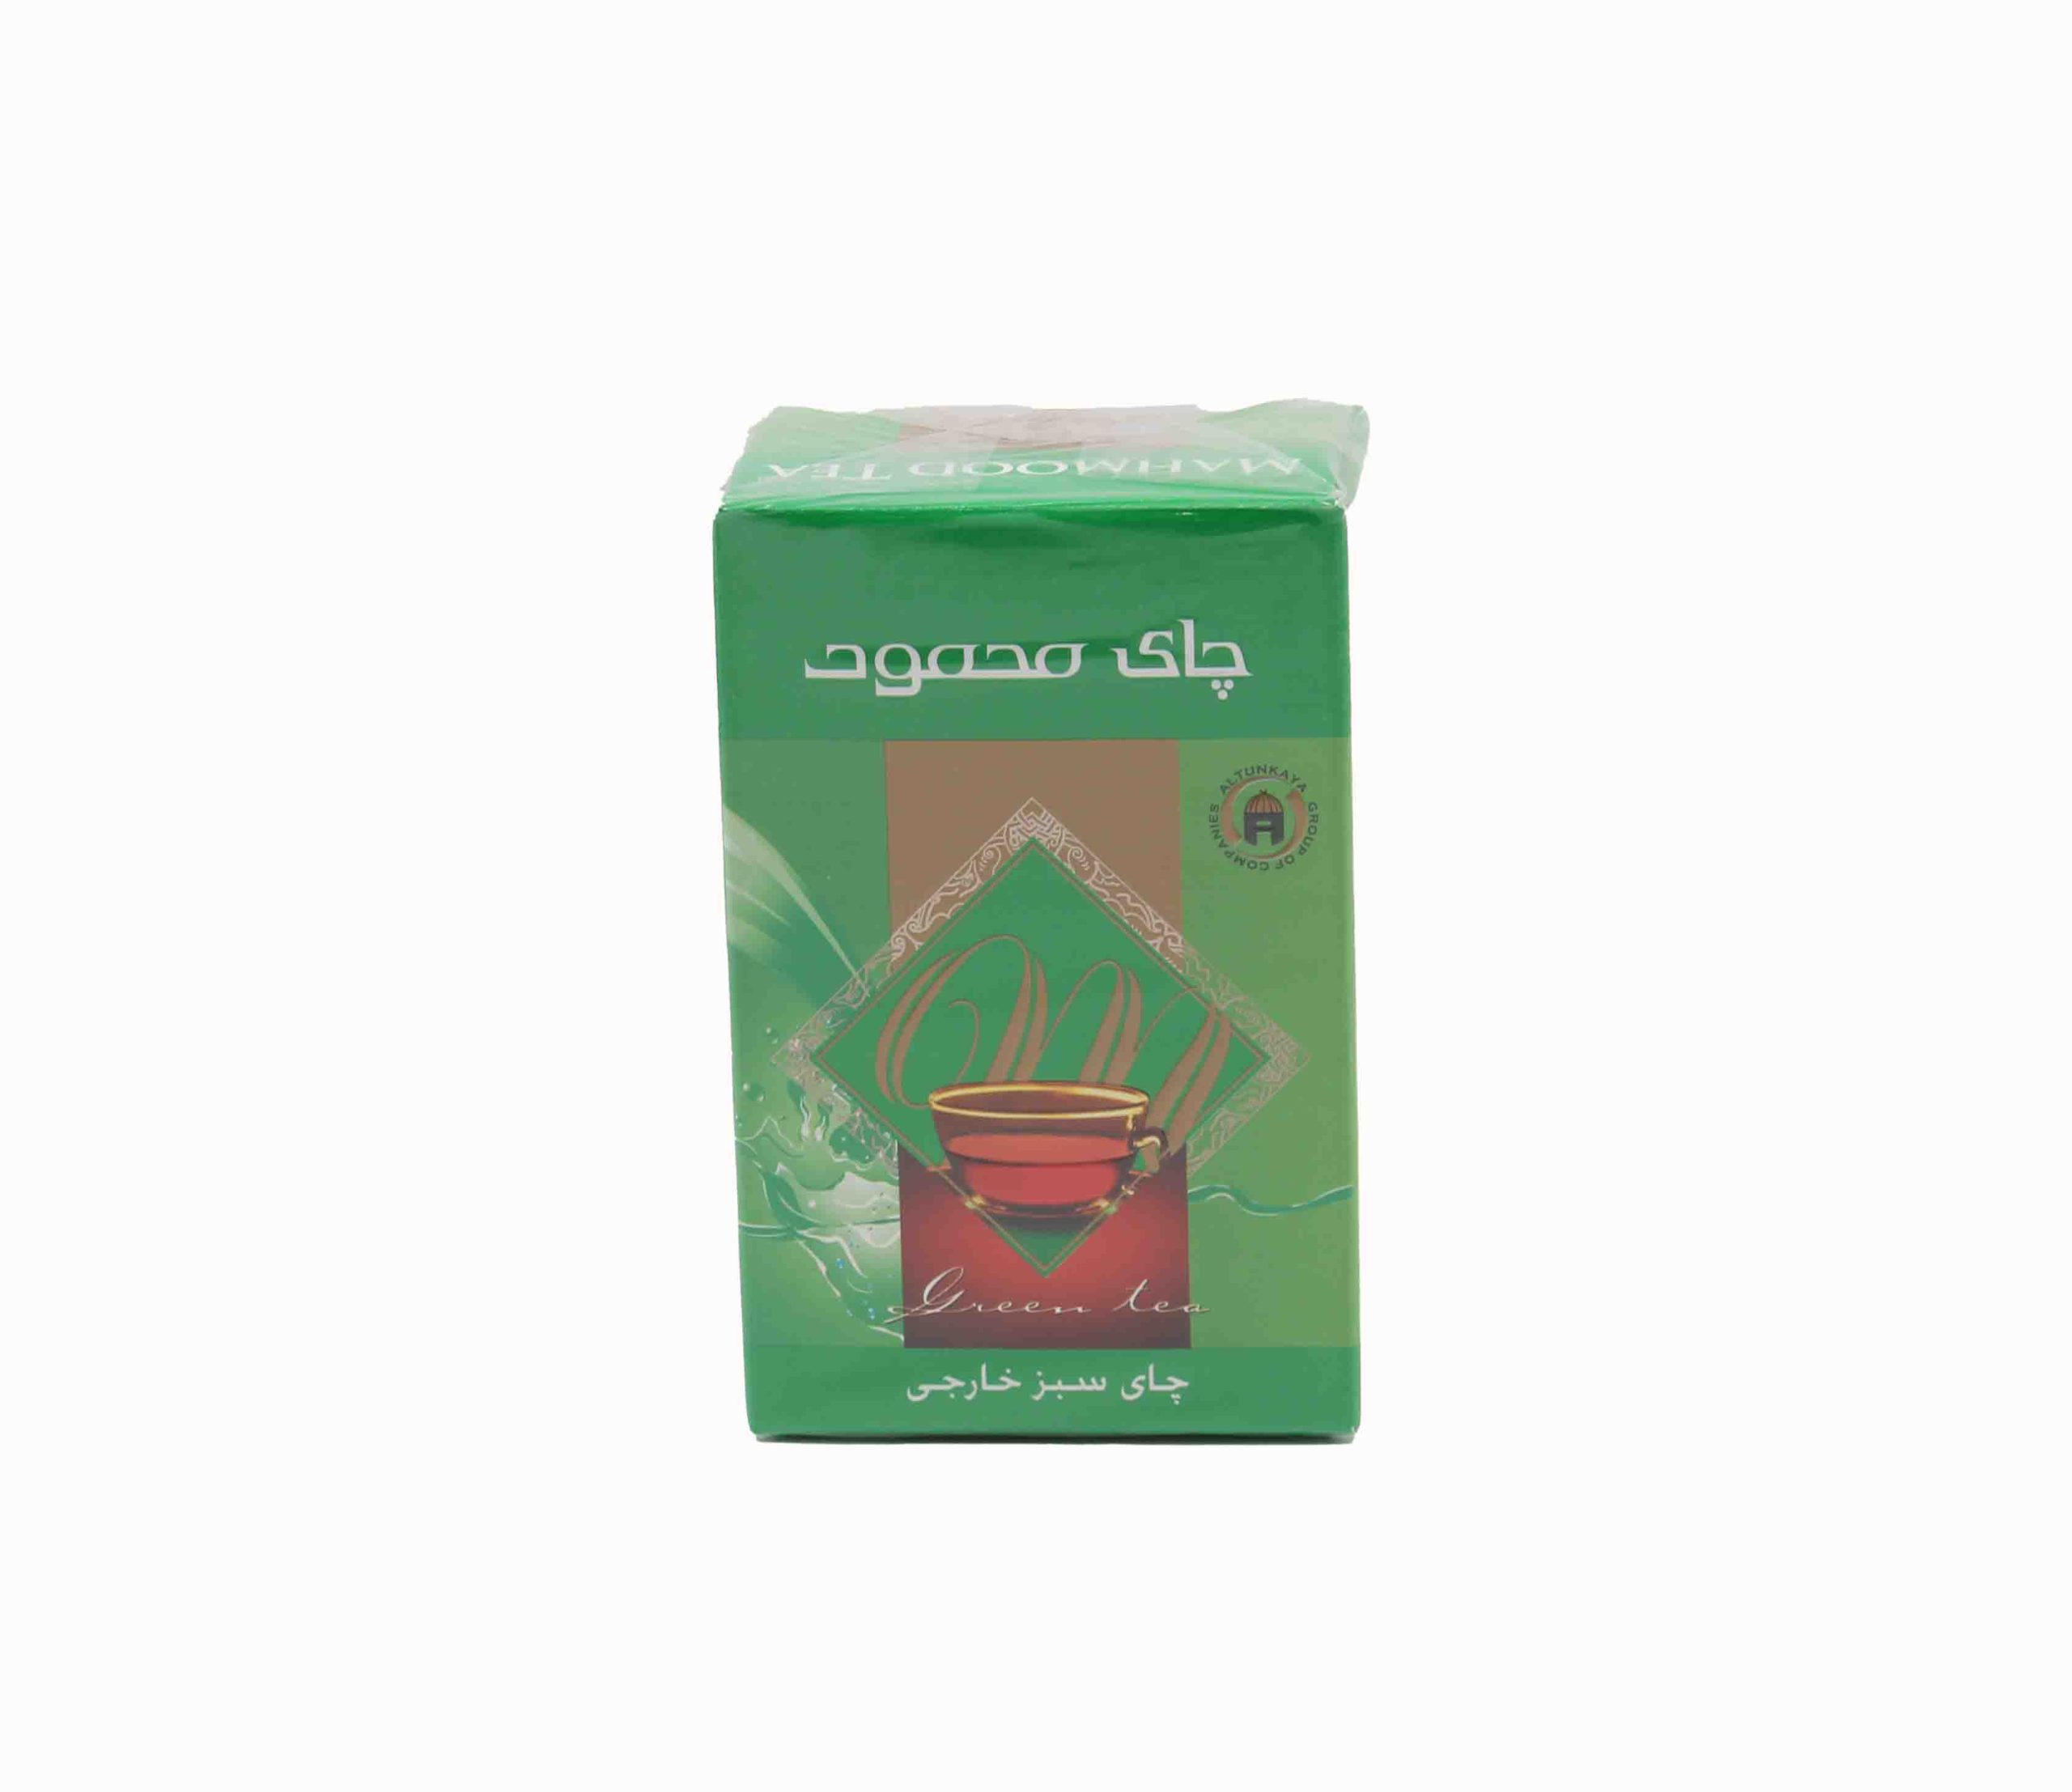 محمود چای سبز 100g